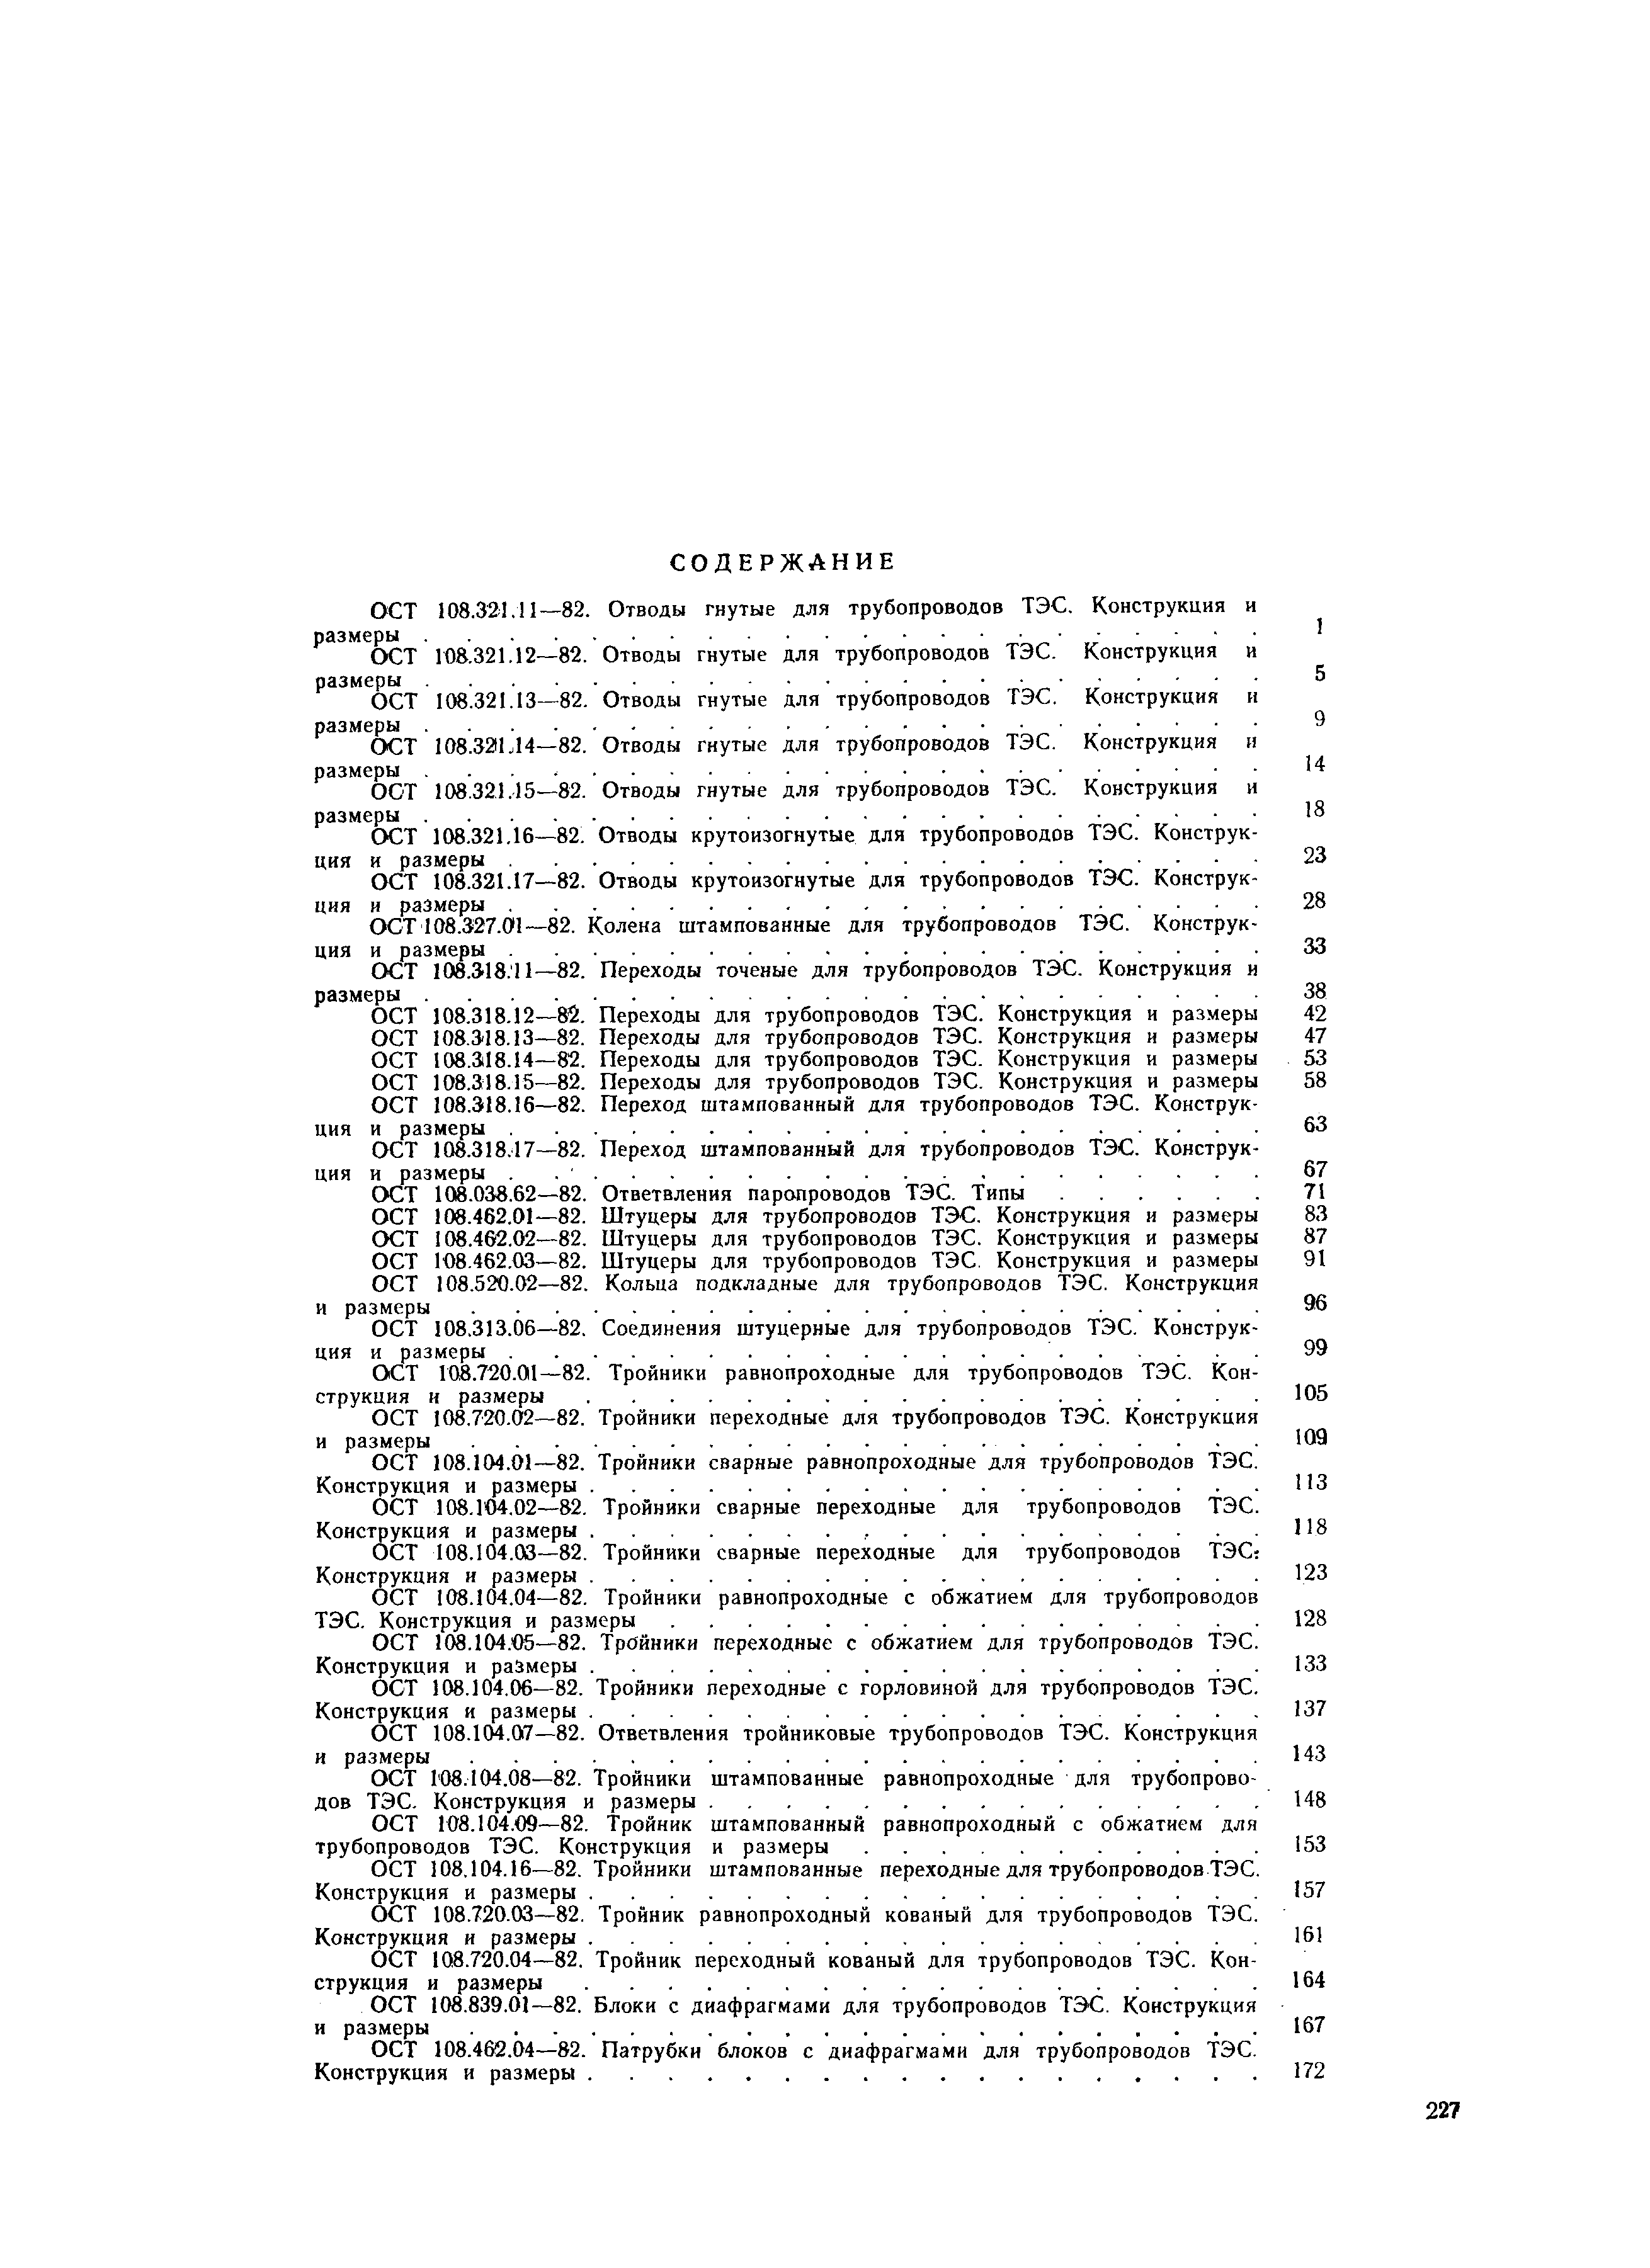 ОСТ 108.104.05-82